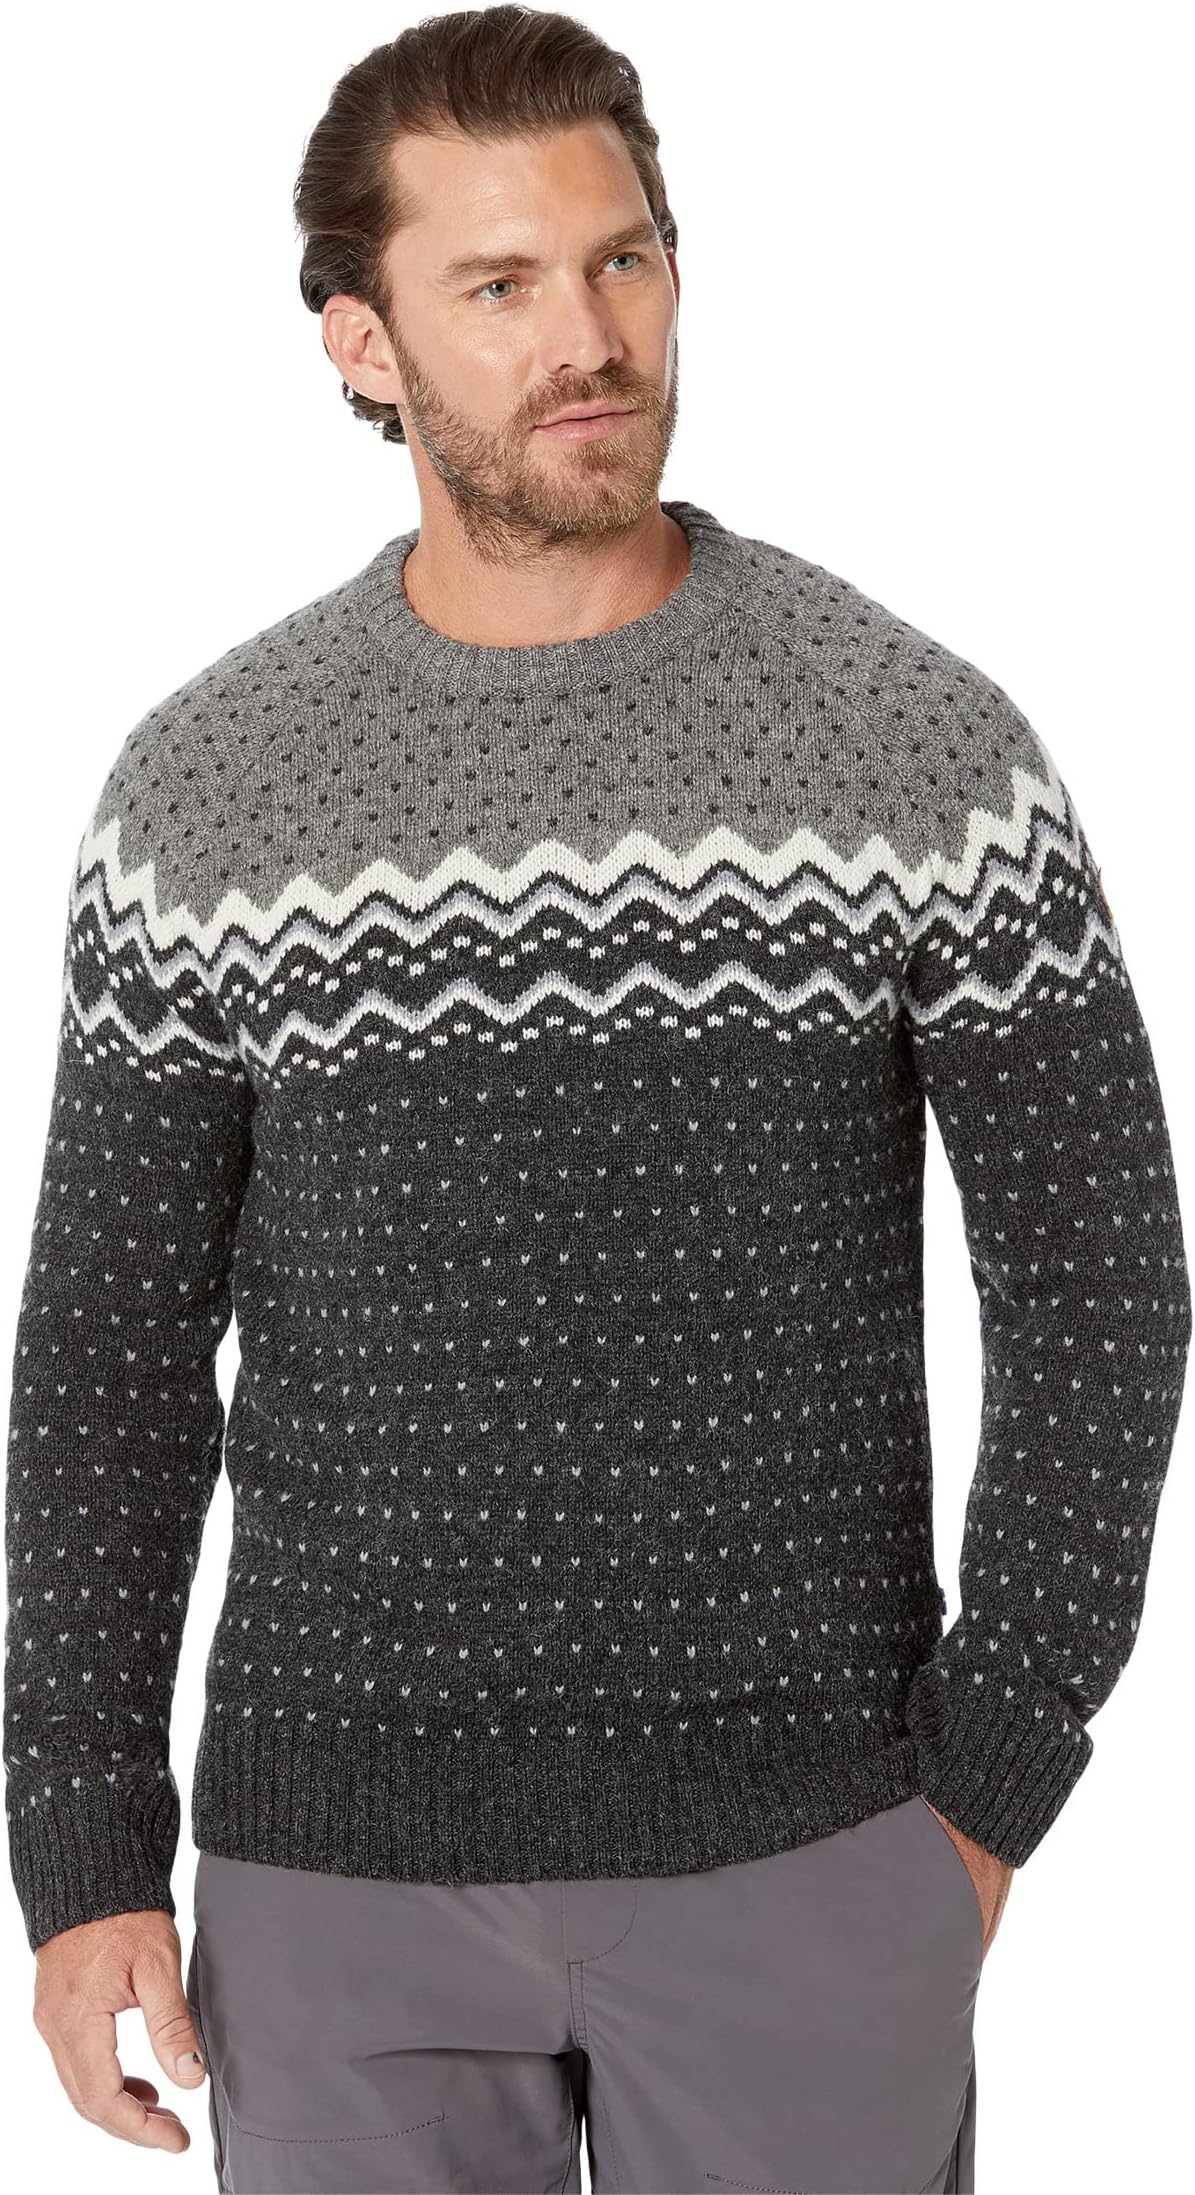 вязаный свитер patton oscar jacobson цвет dark grey Вязаный свитер Övik Fjällräven, цвет Dark Grey/Grey